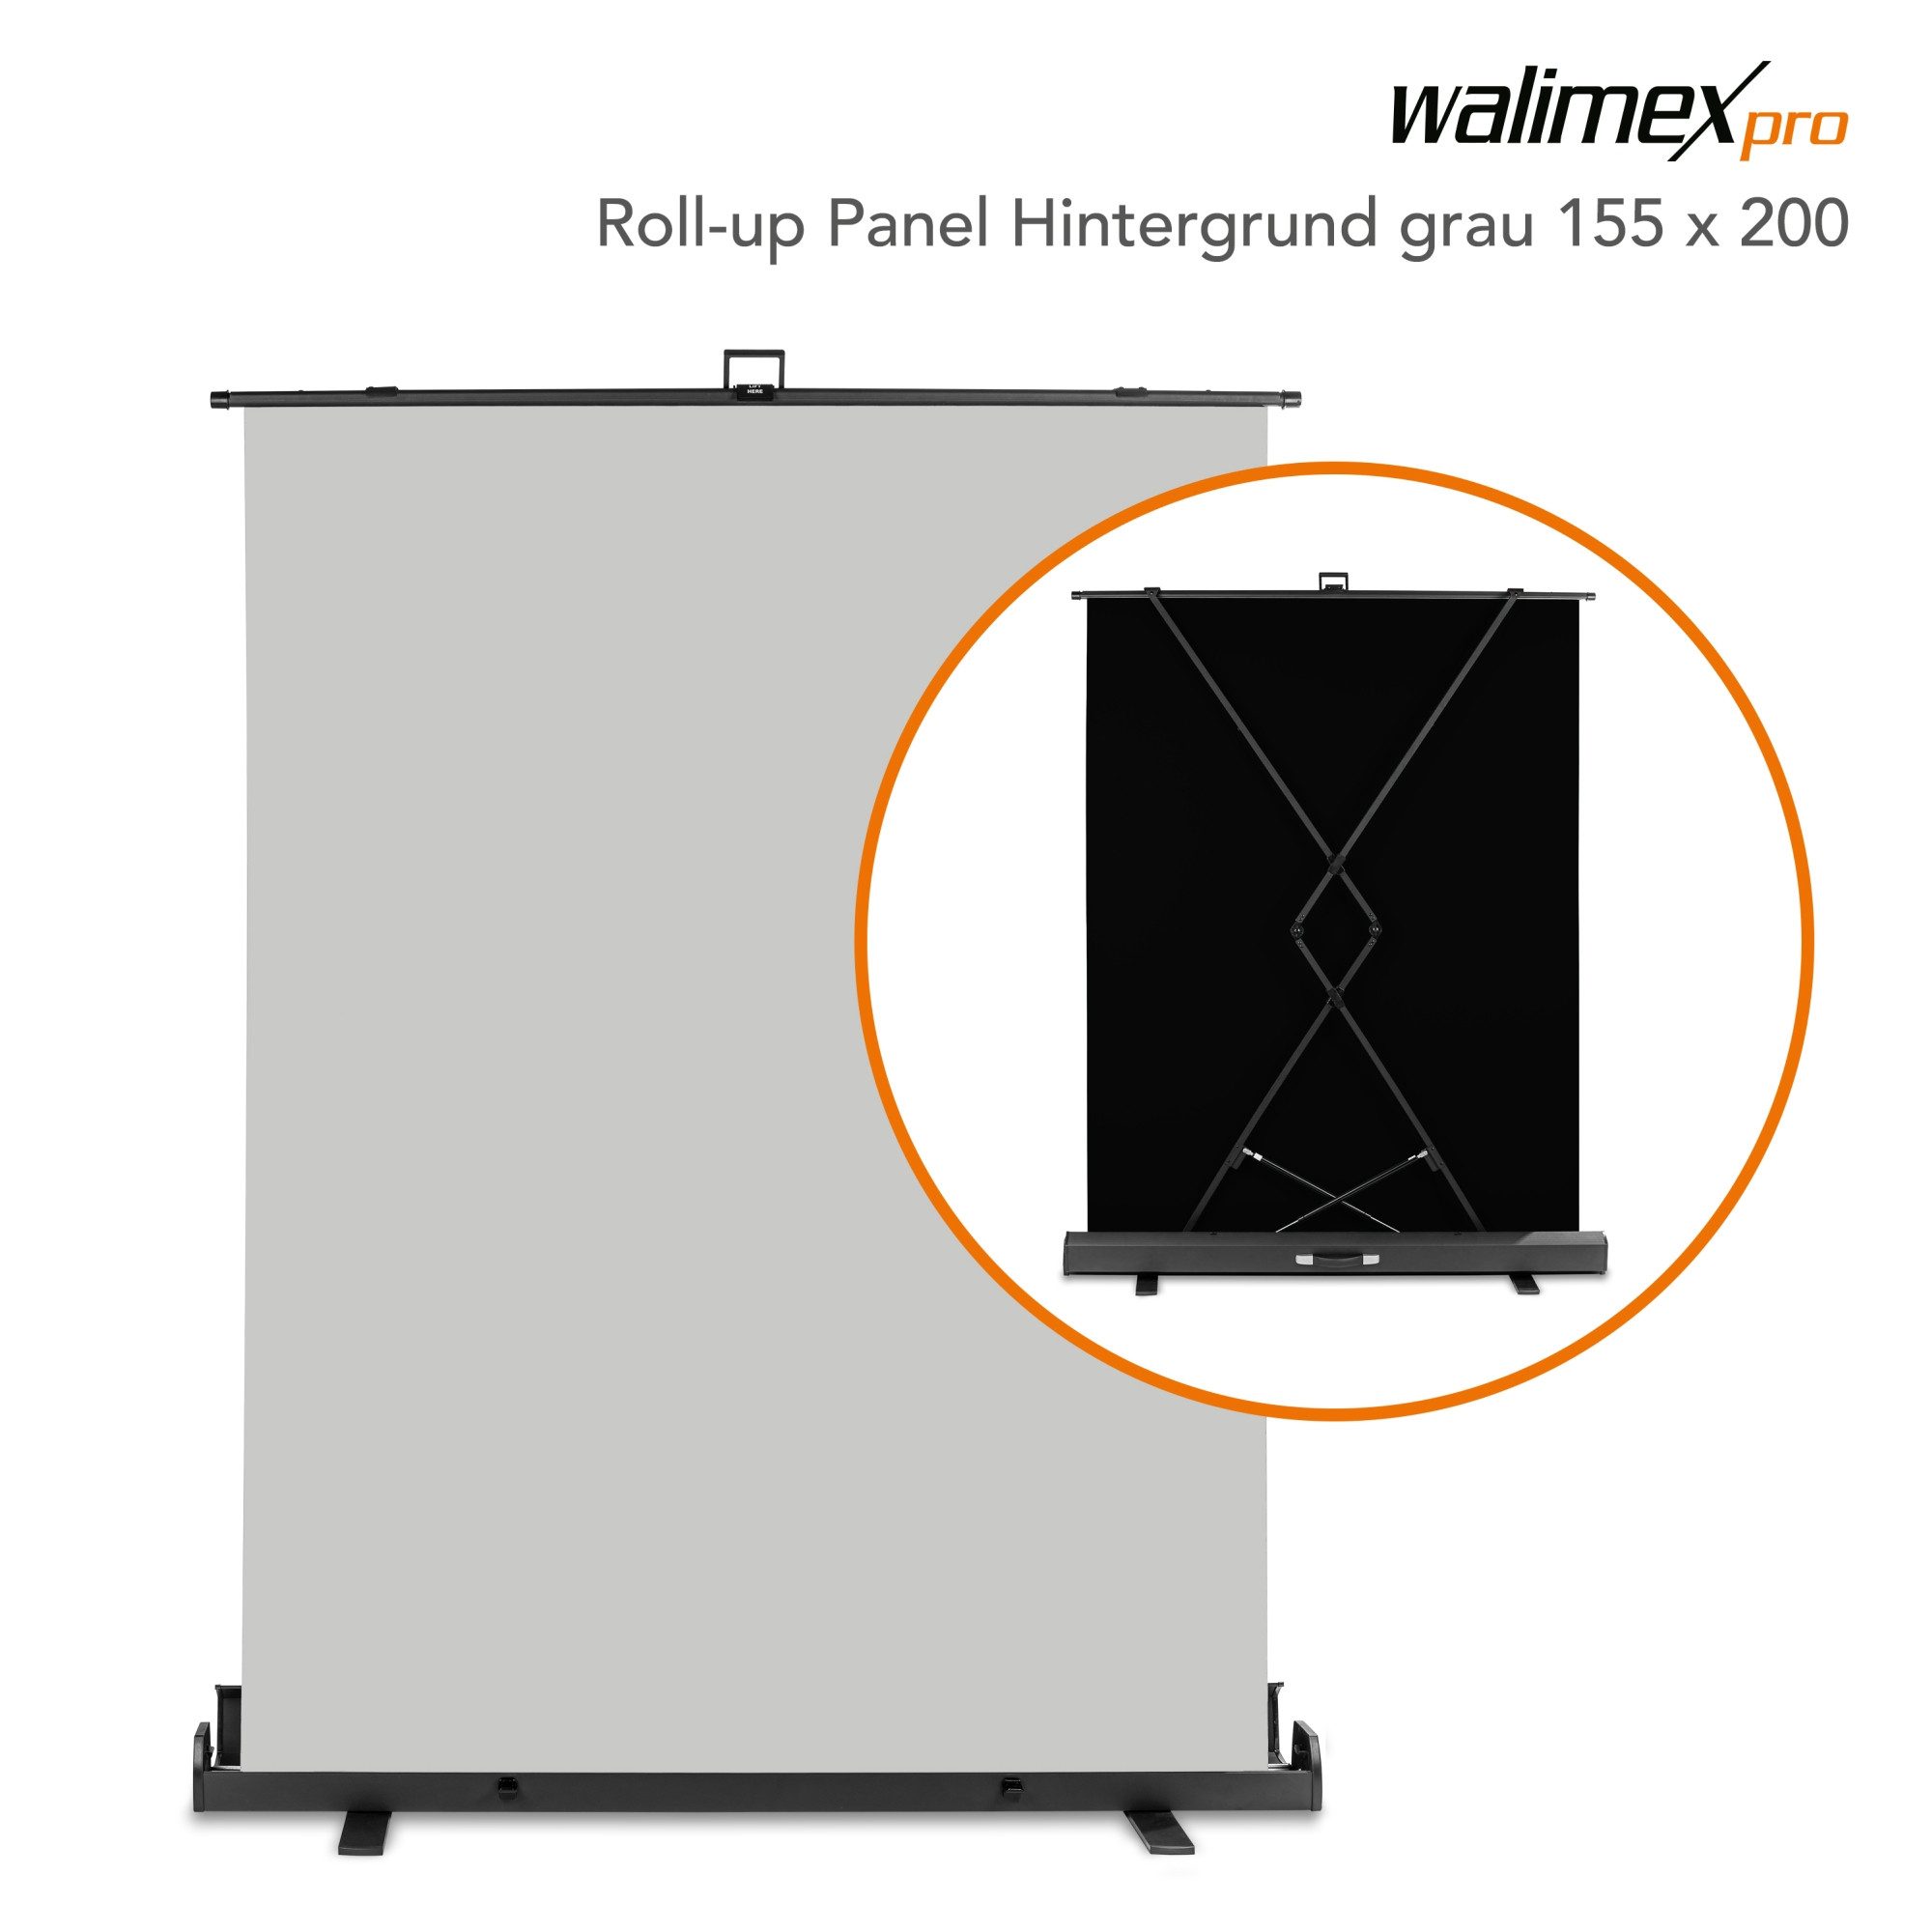 Walimex Pro Fotohintergrund Roll-up Panel Hintergrund grau 155x200